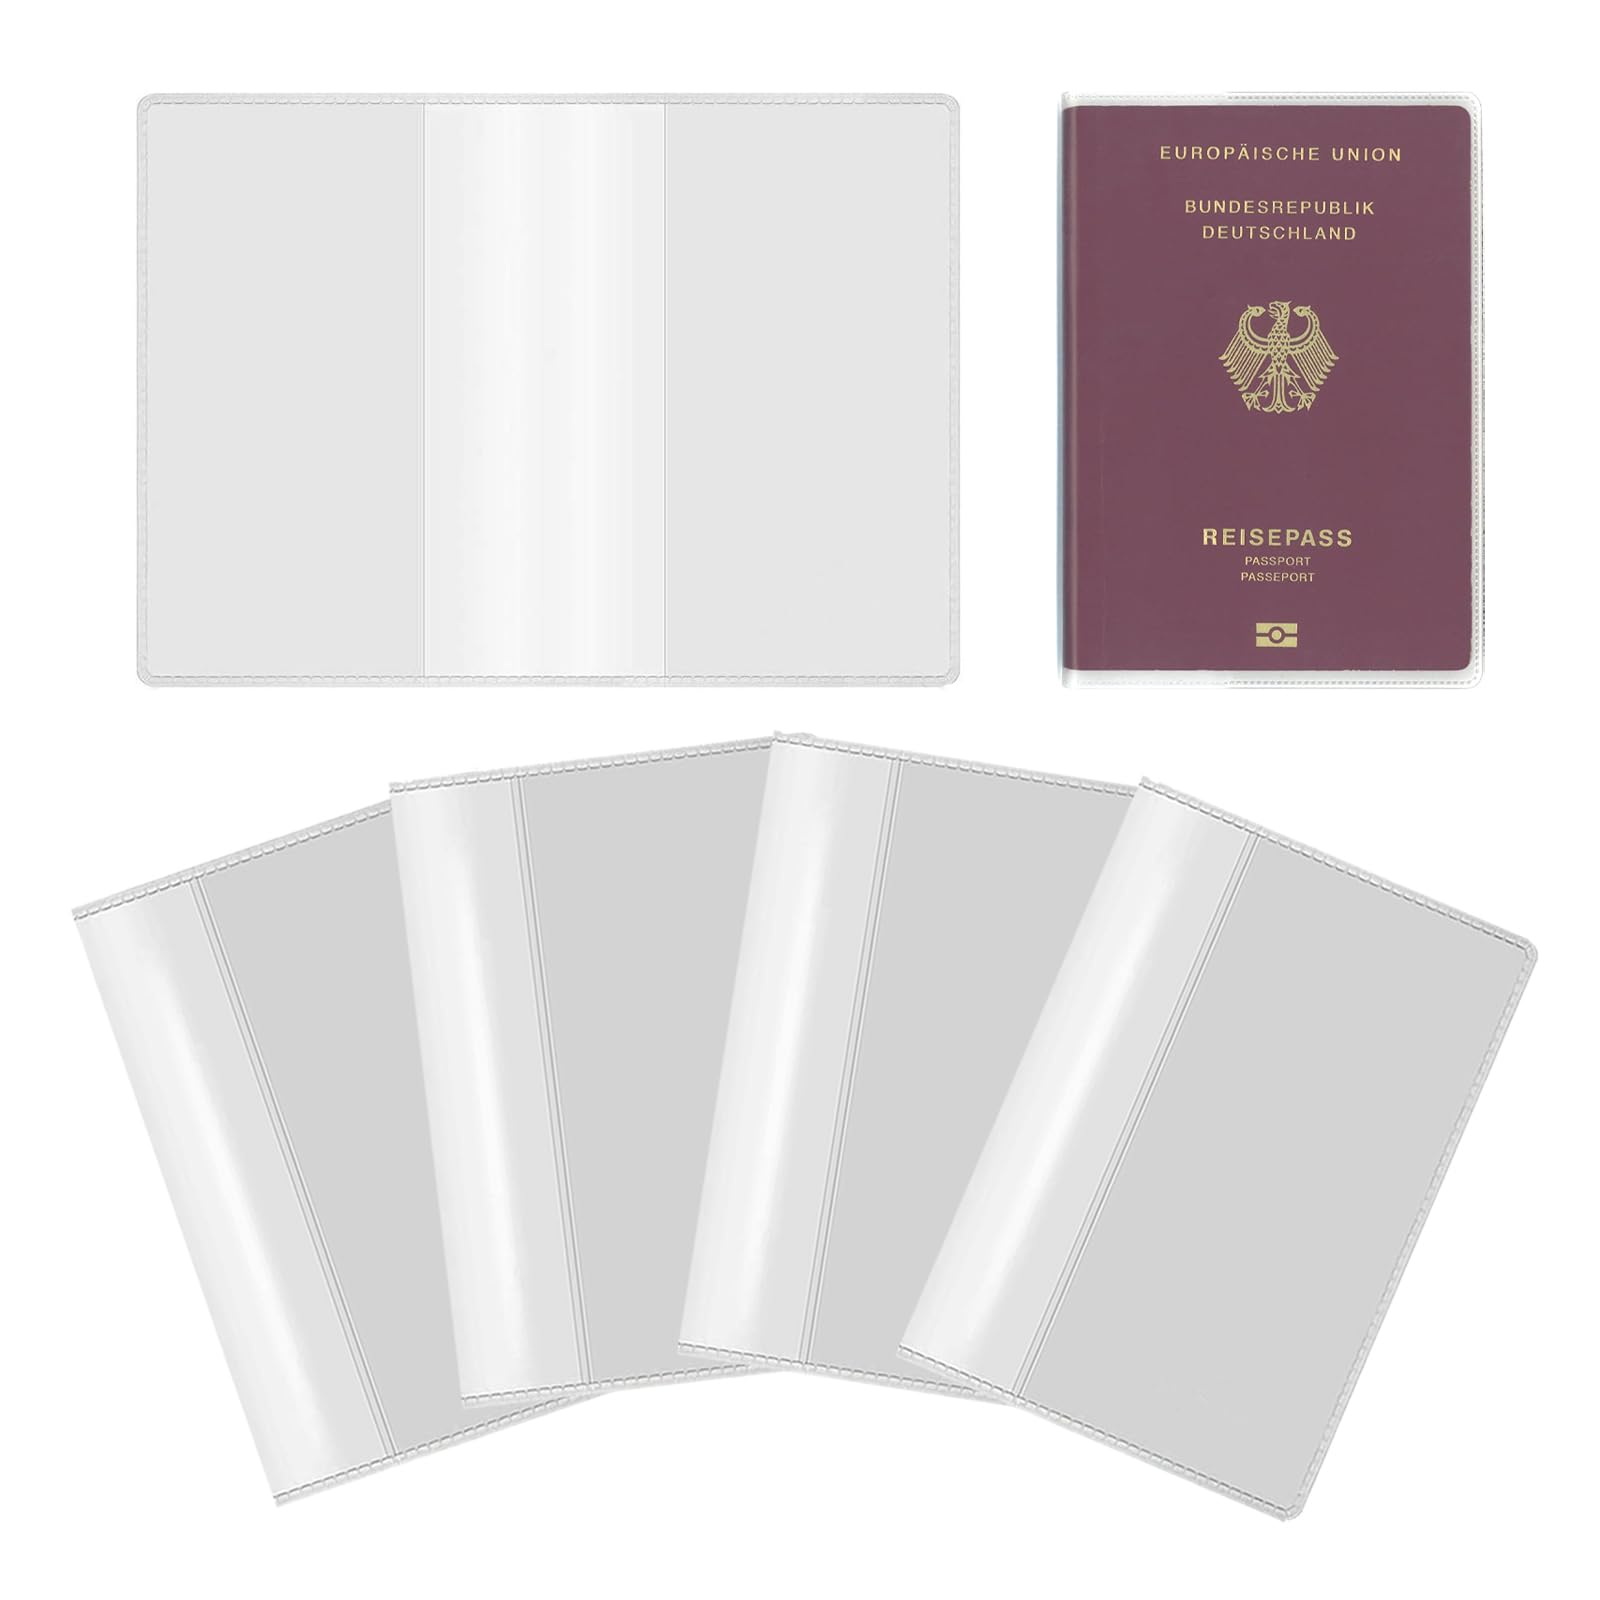 パスポートケース スキミング防止 パスポートカバー パスポート カードケース 多機能収納ポケット付き 国内海外旅行用品 トラベルウォレッド 高級PU パスポートポーチ 名刺 クレジットカード 航空券 海外出張 PureSino (透明)